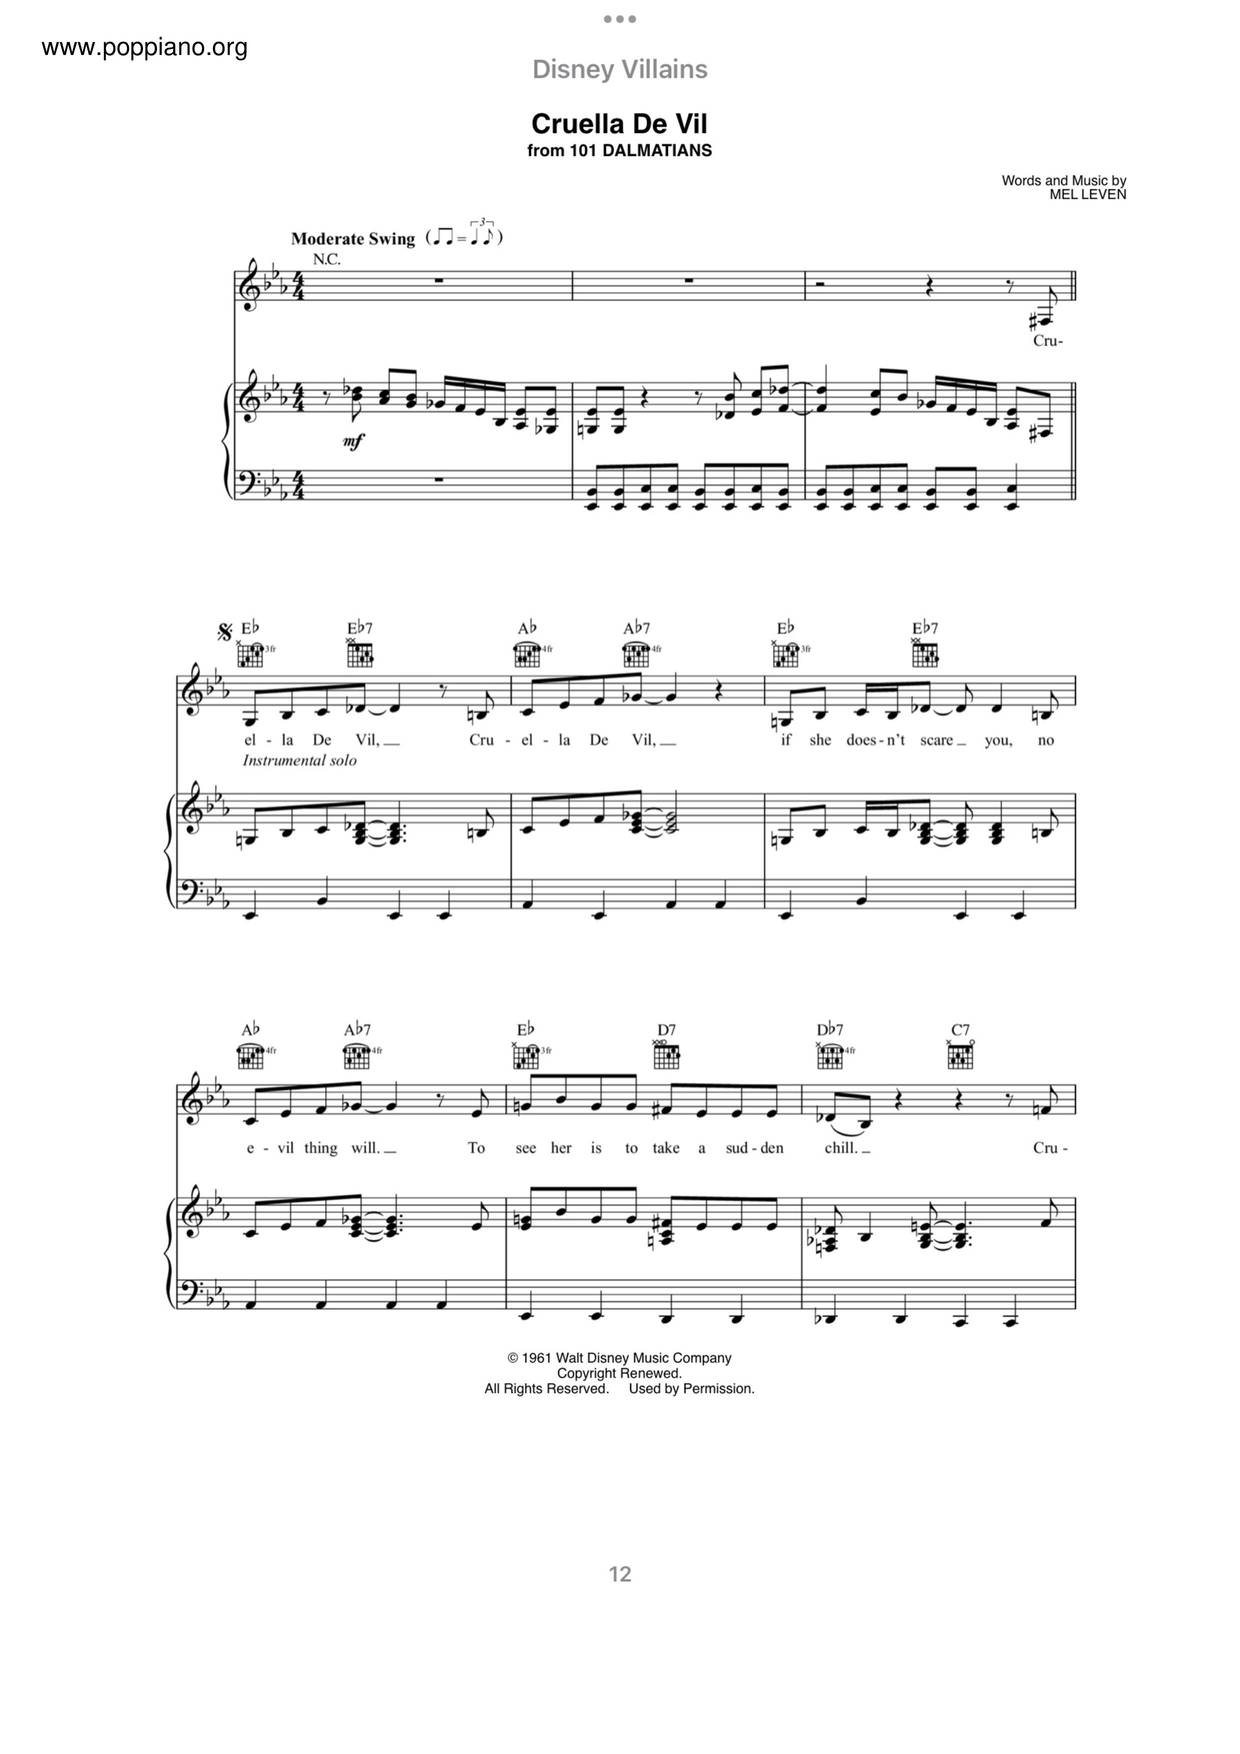 101 Dalmatians - Cruella De Vilピアノ譜